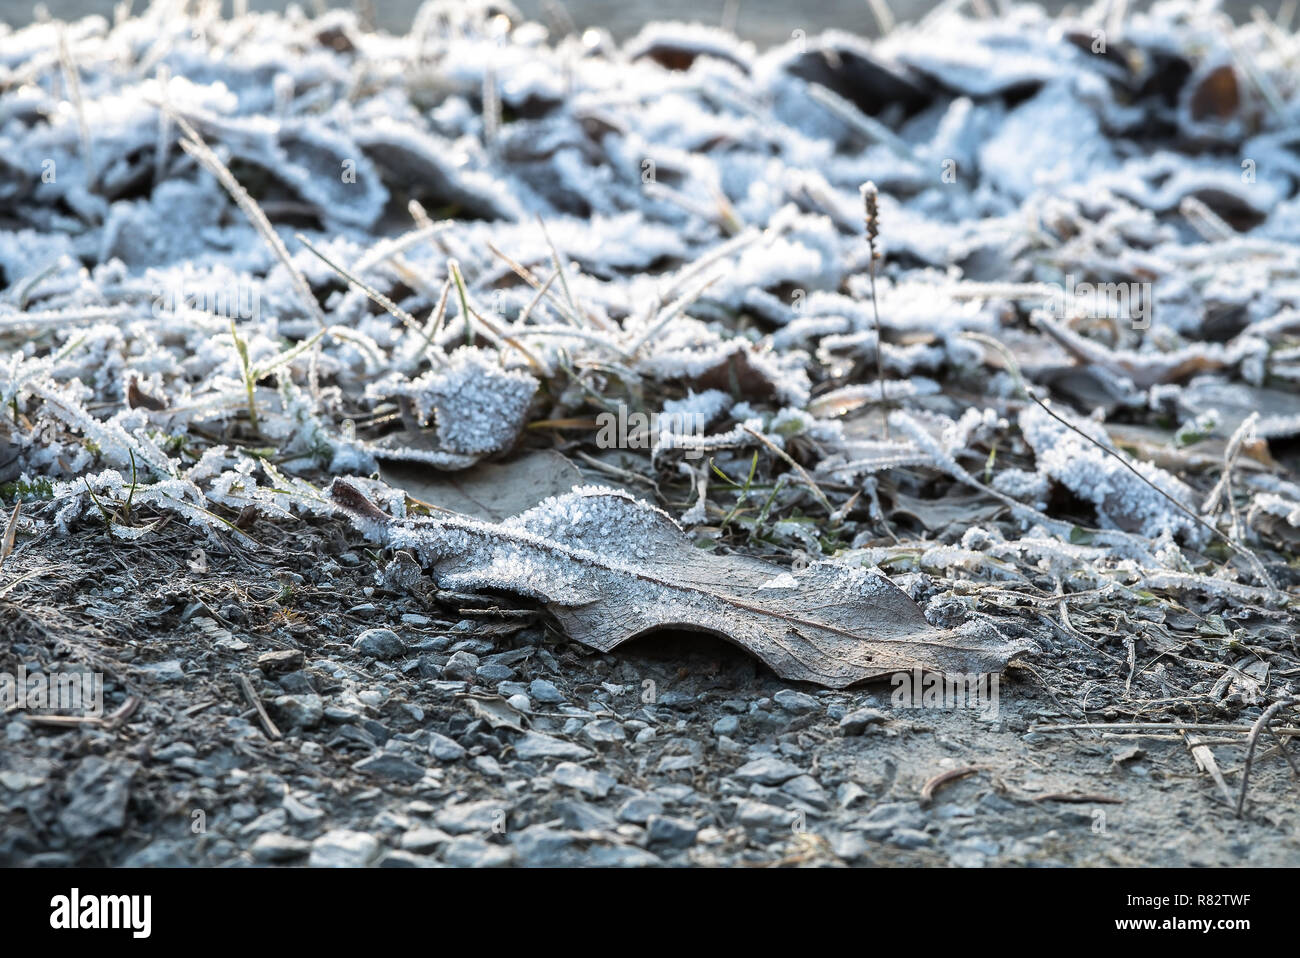 Gefrorene iced Blätter und Gras auf dem Boden im Hoar Frost bedeckt einen kalten frühen nordischen Winter Morgen bei Sonnenaufgang - Begriff der Gefriertemperatur Stockfoto